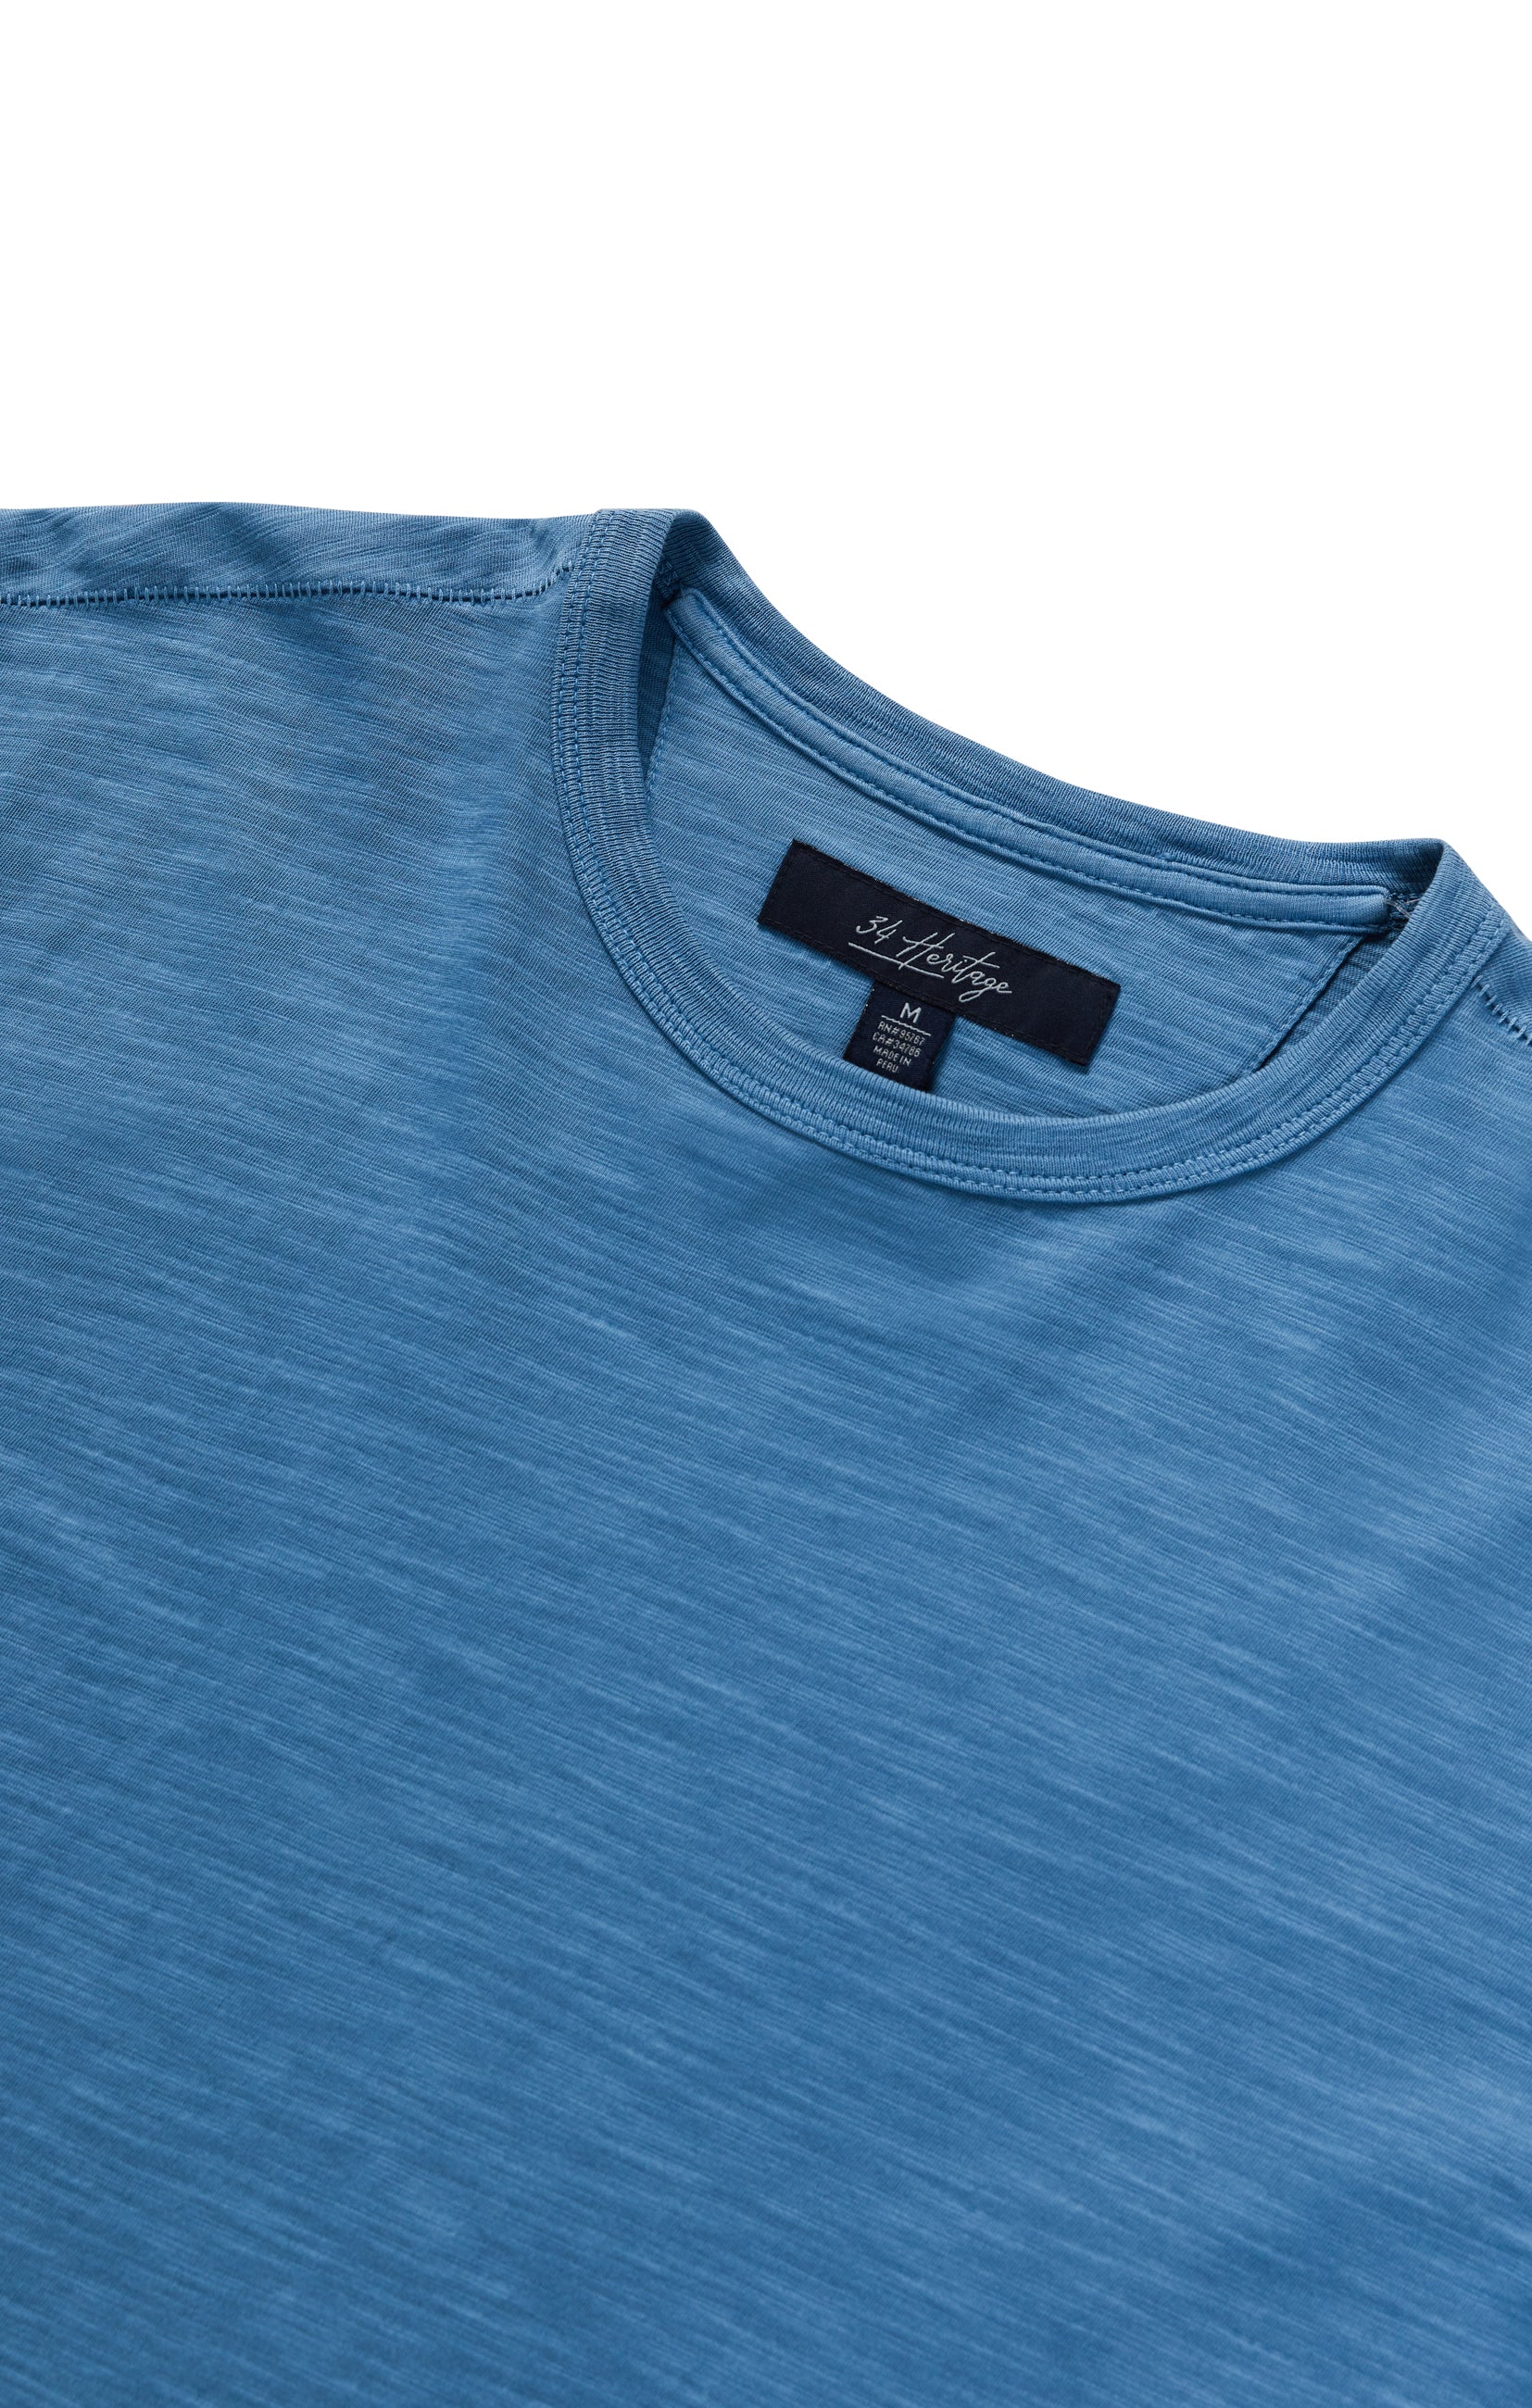 Slub Crew Neck T-Shirt in Vallarta Blue